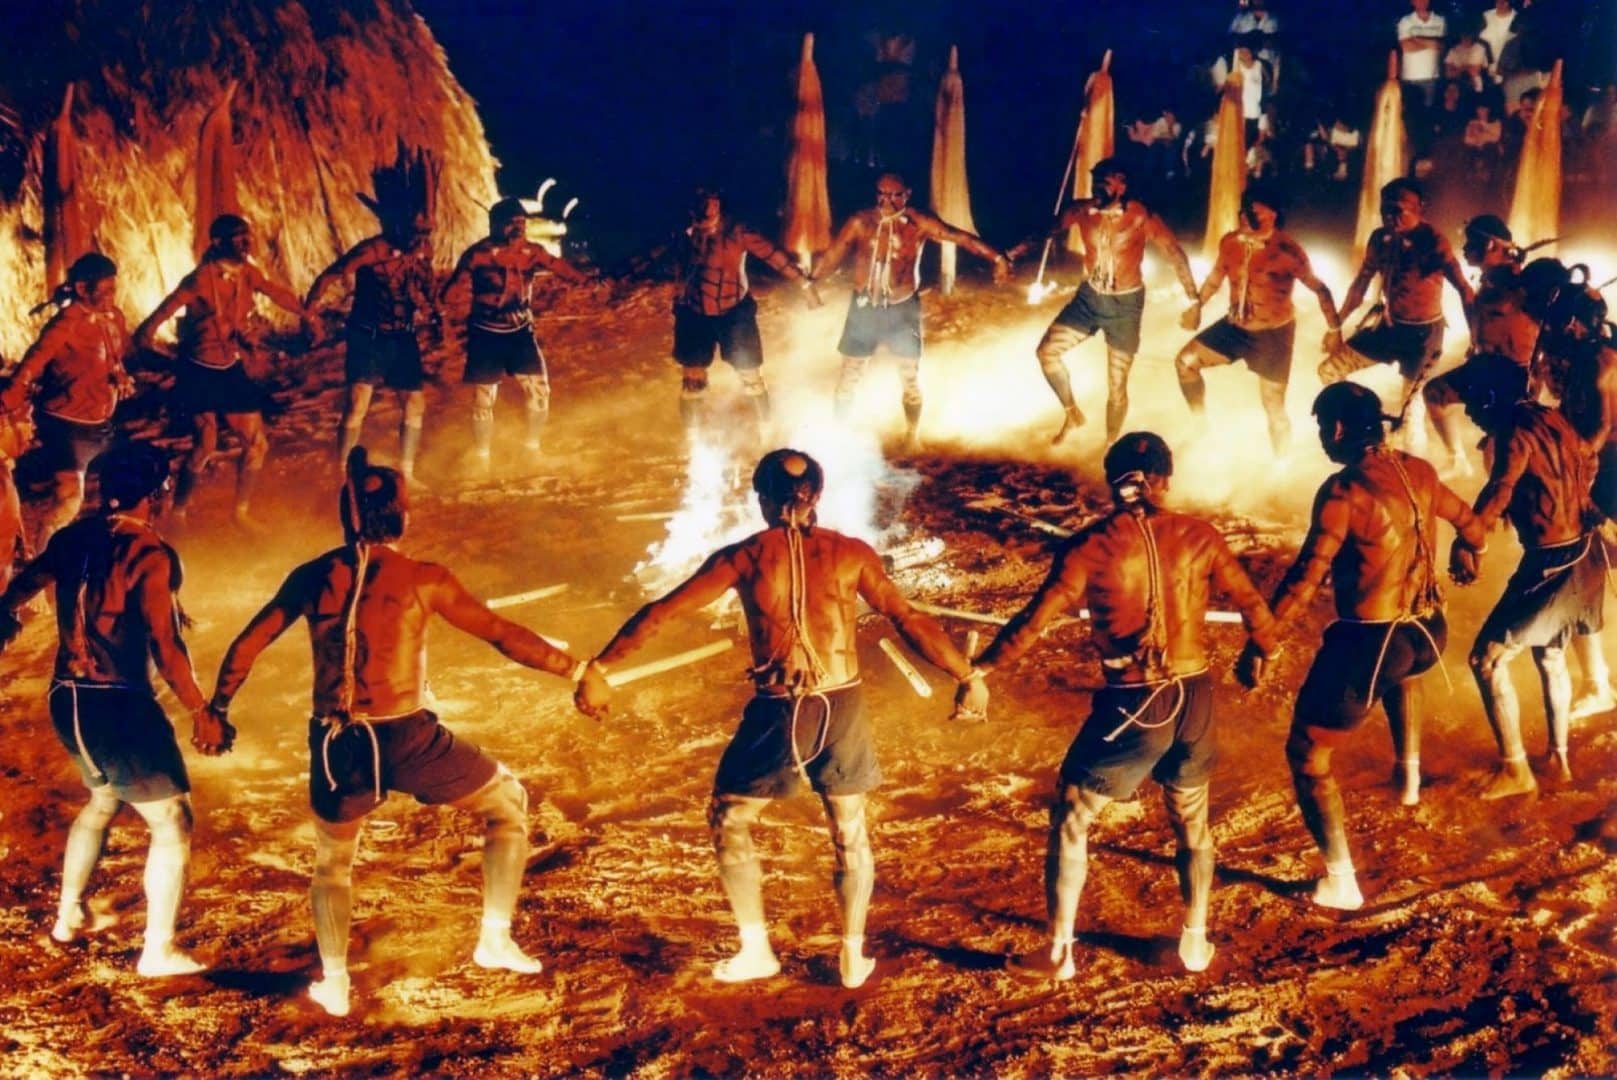 A Cultura Tupi-guarani sofreu forte impacto no convívio com o colonizador